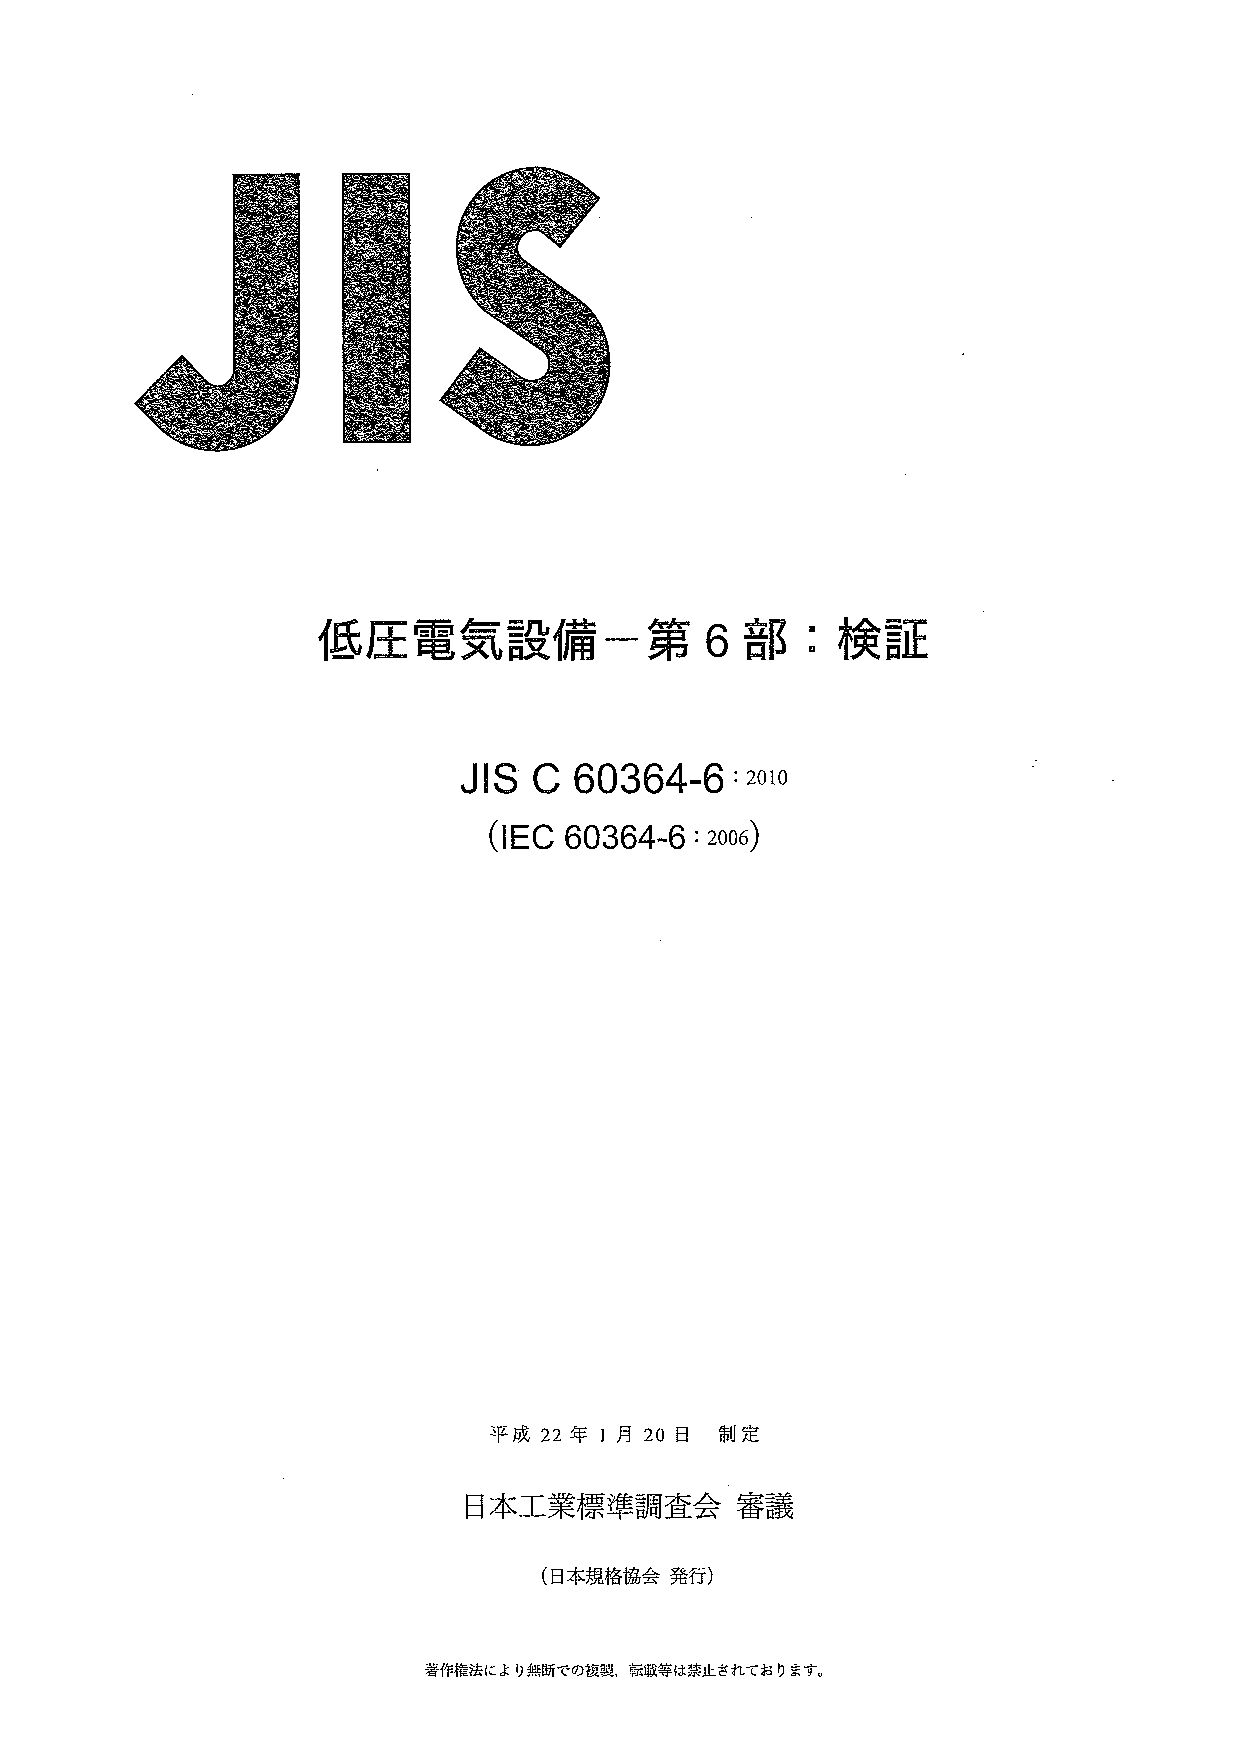 JIS C 60364-6:2010